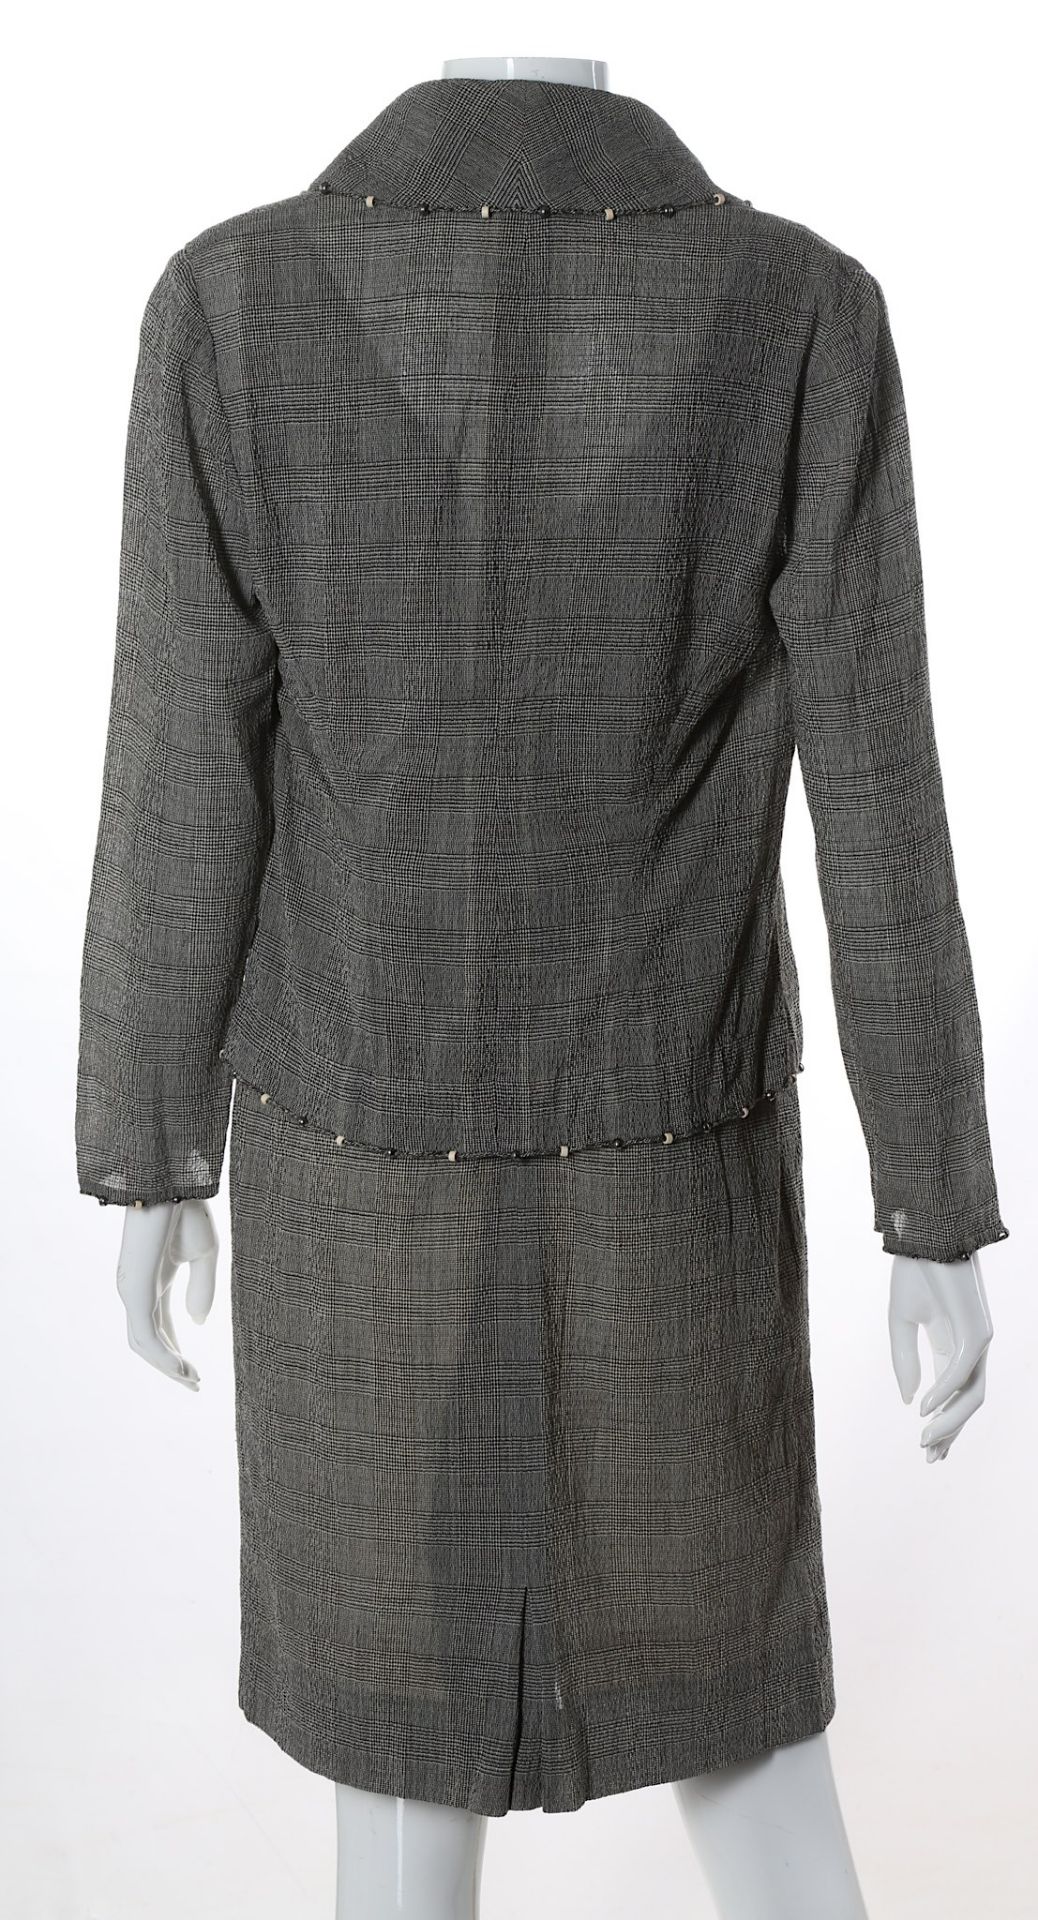 Christian Dior Boutique Glen Check Dress Suit, bea - Bild 4 aus 6